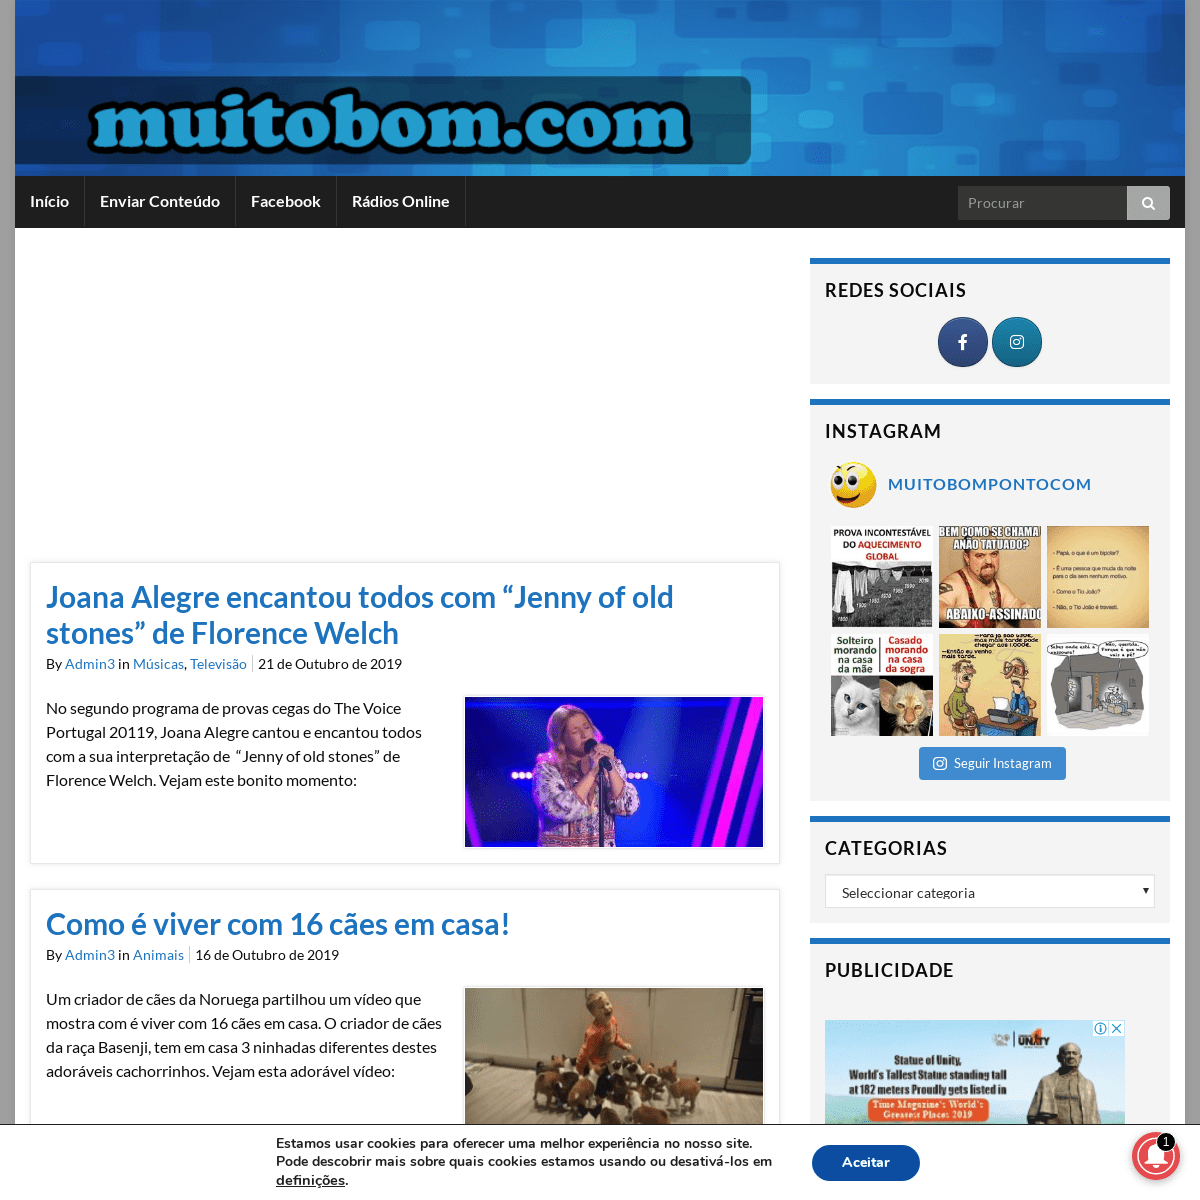 A complete backup of muitobom.com